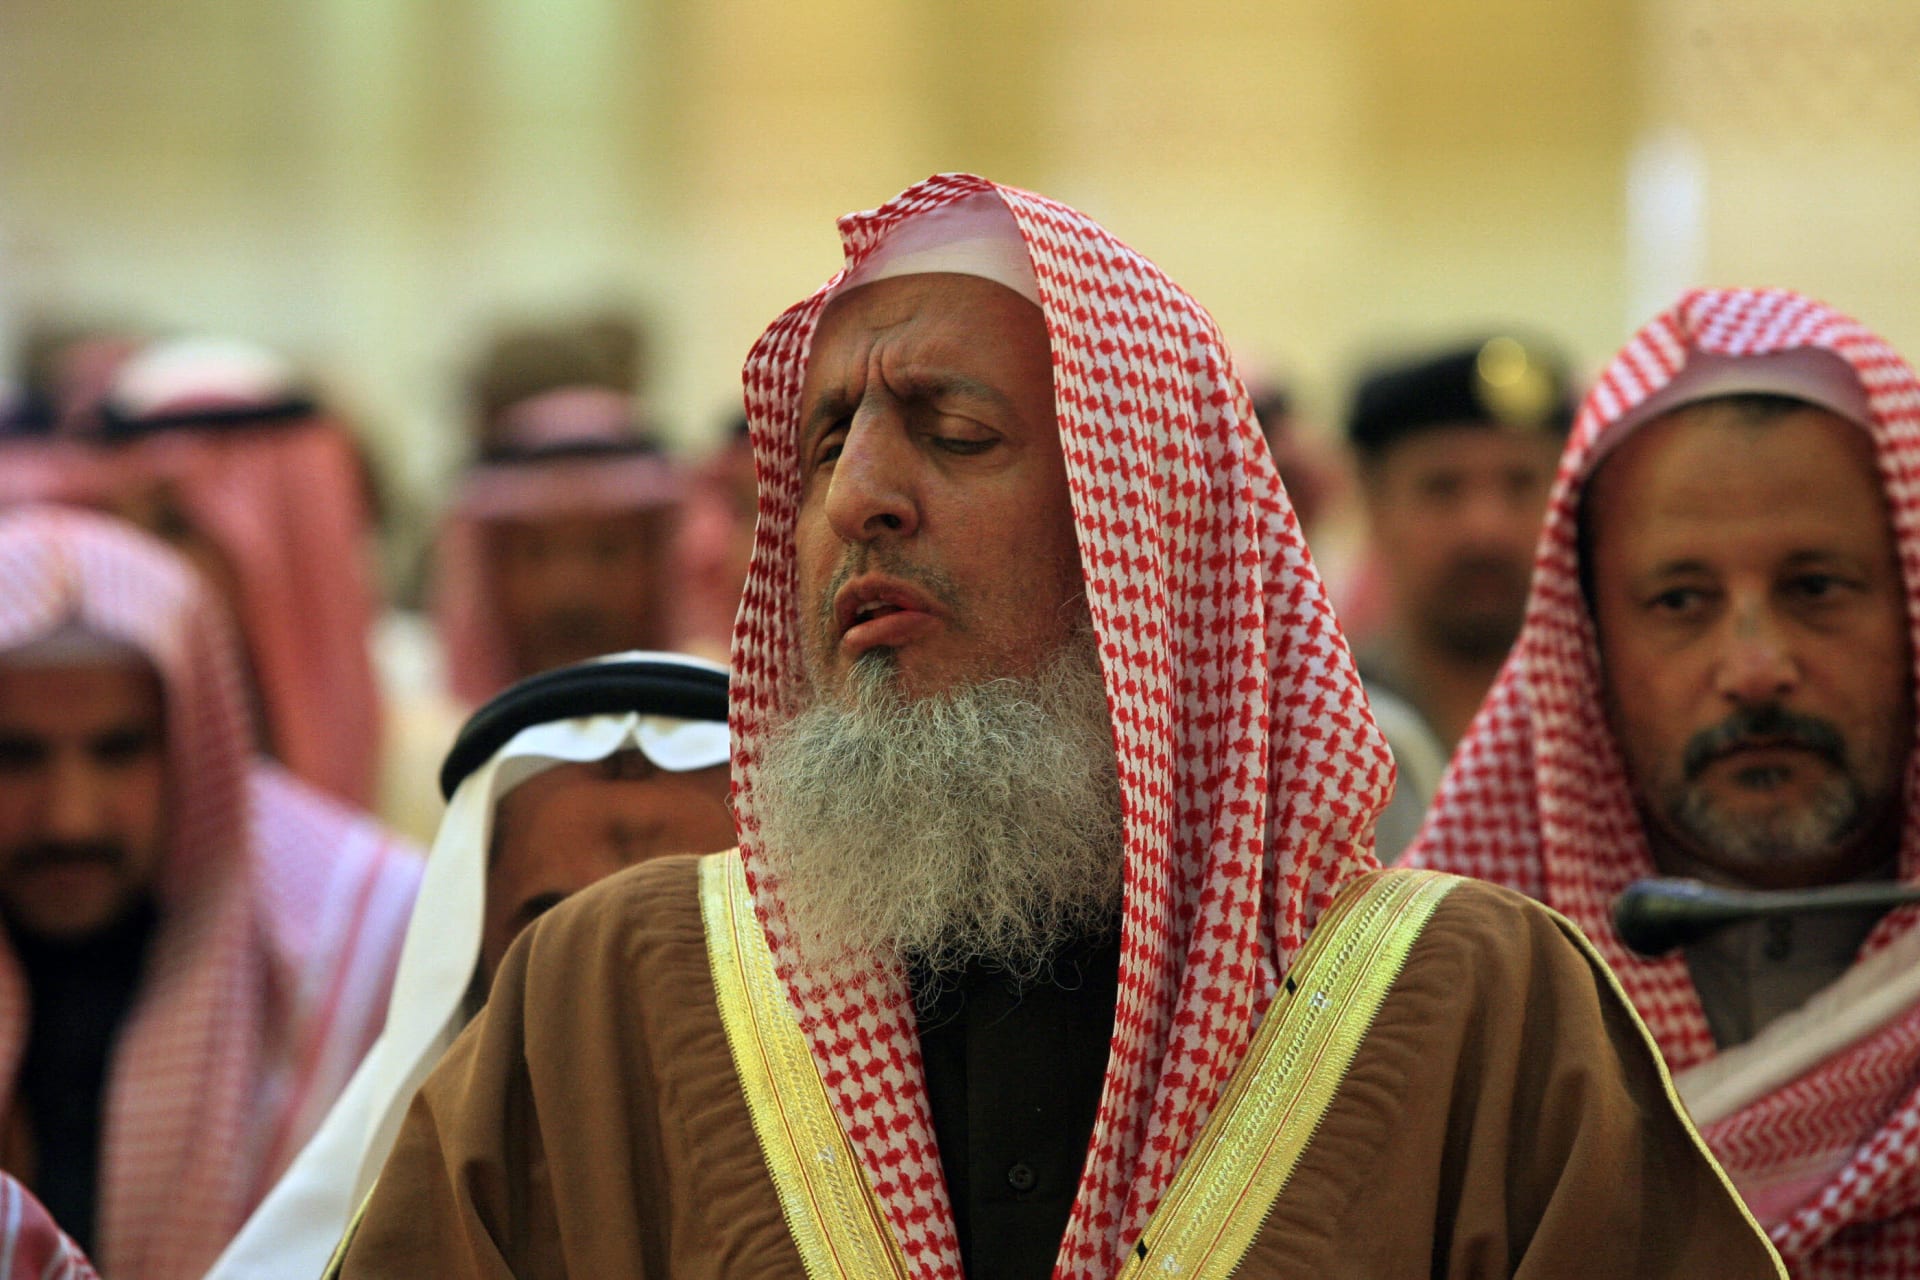 مفتي السعودية يدعو رجال الأعمال والأغنياء إلى التبرع للمحتاجين خلال فصل الشتاء